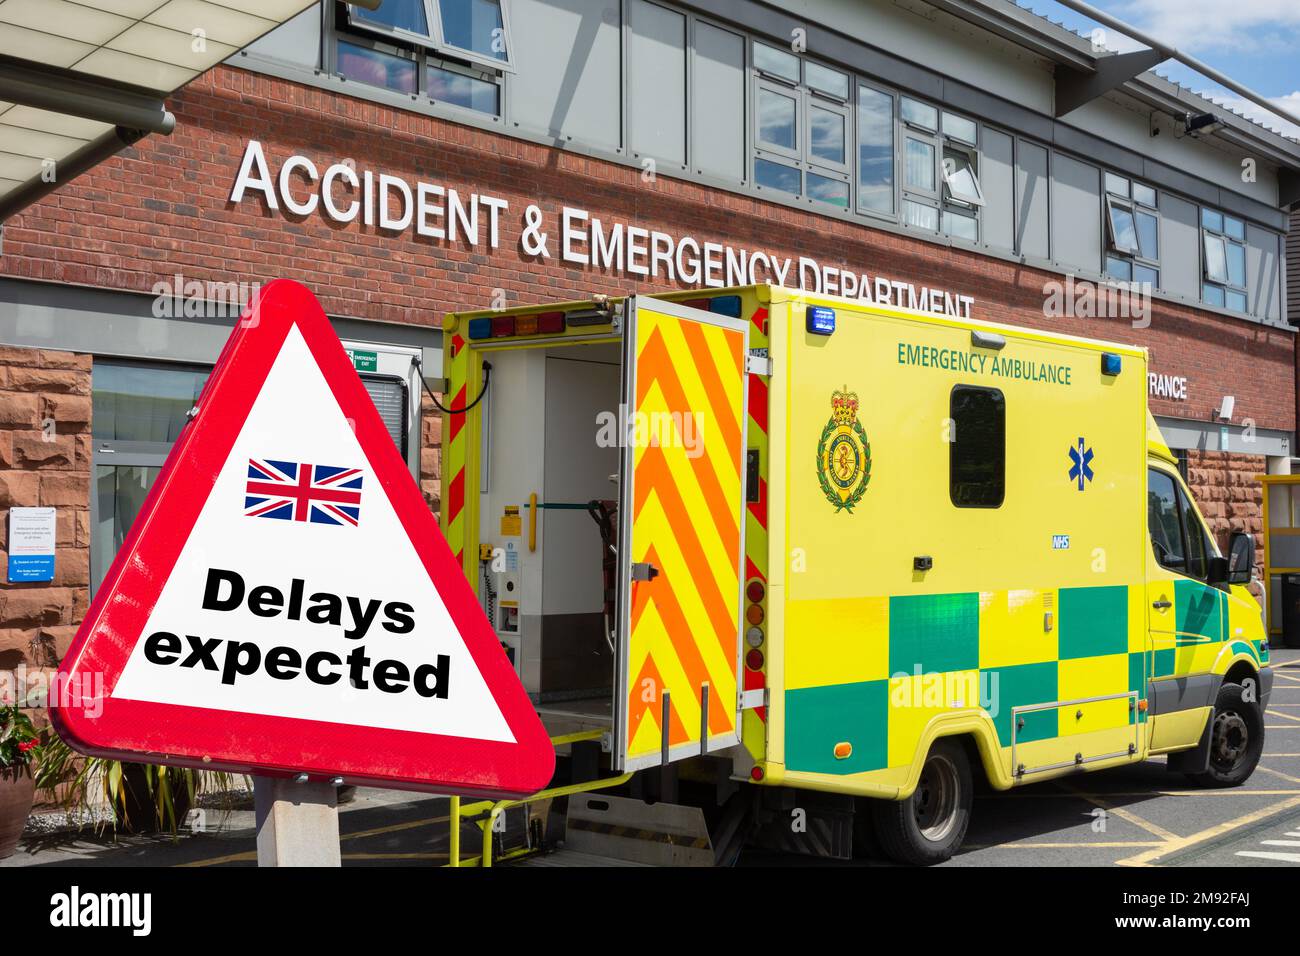 Ambulance extérieure accident et urgence à l'hôpital NHS en Angleterre, Royaume-Uni. Retards, crise NHS, action industrielle, grève... concept Banque D'Images